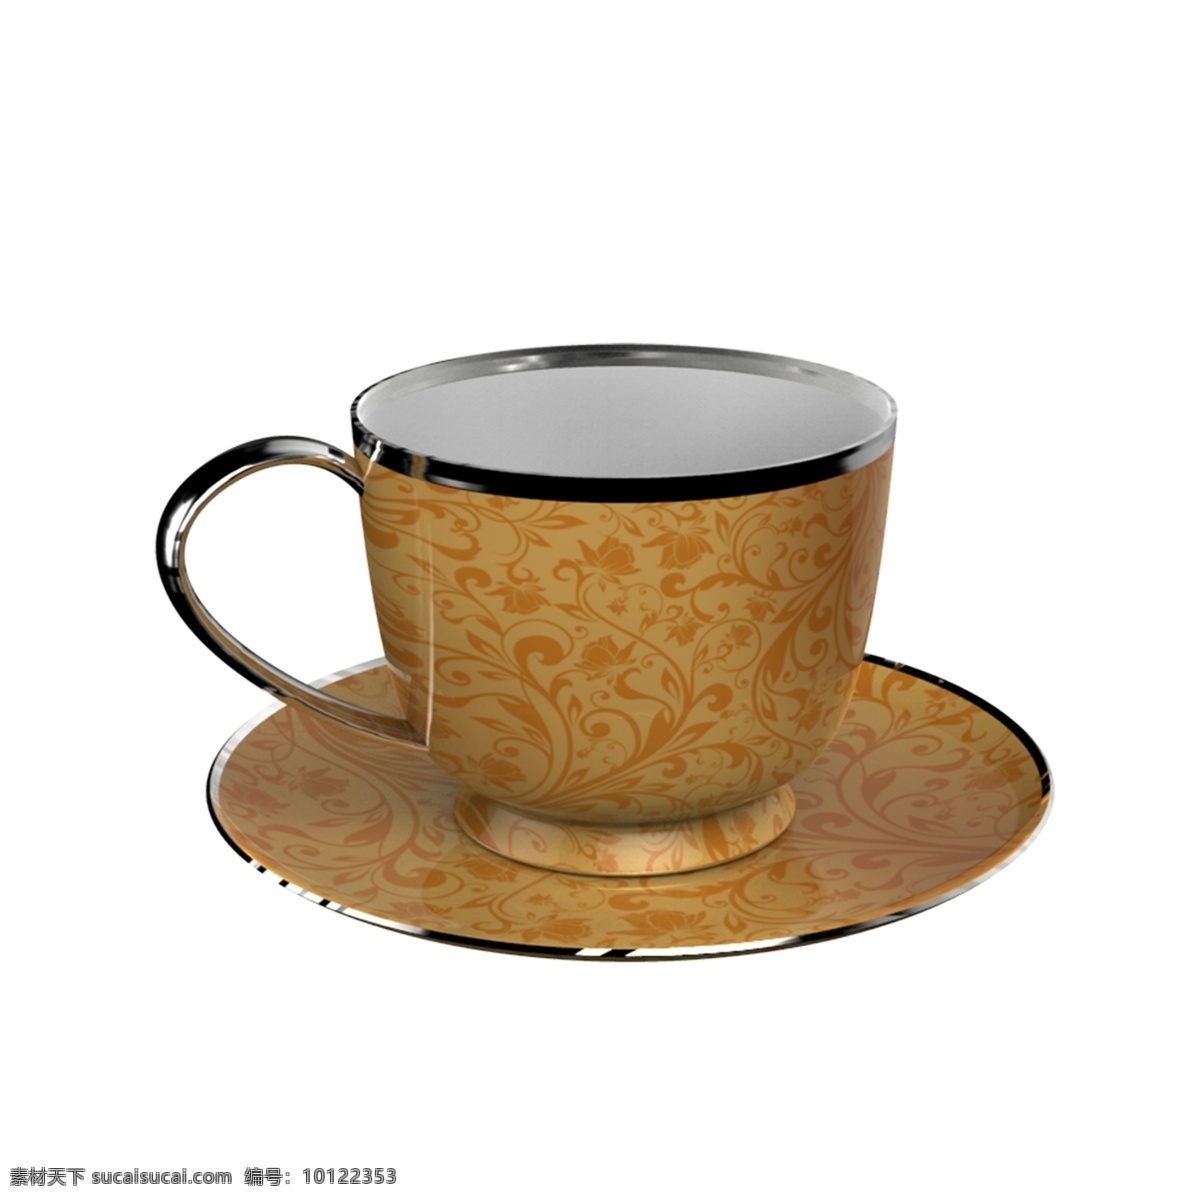 杯子 咖啡杯 陶瓷 杯 免 抠 陶瓷杯 水杯 杯子模型 三维 立体 模型 茶具 生活用品 家居用品 喝水